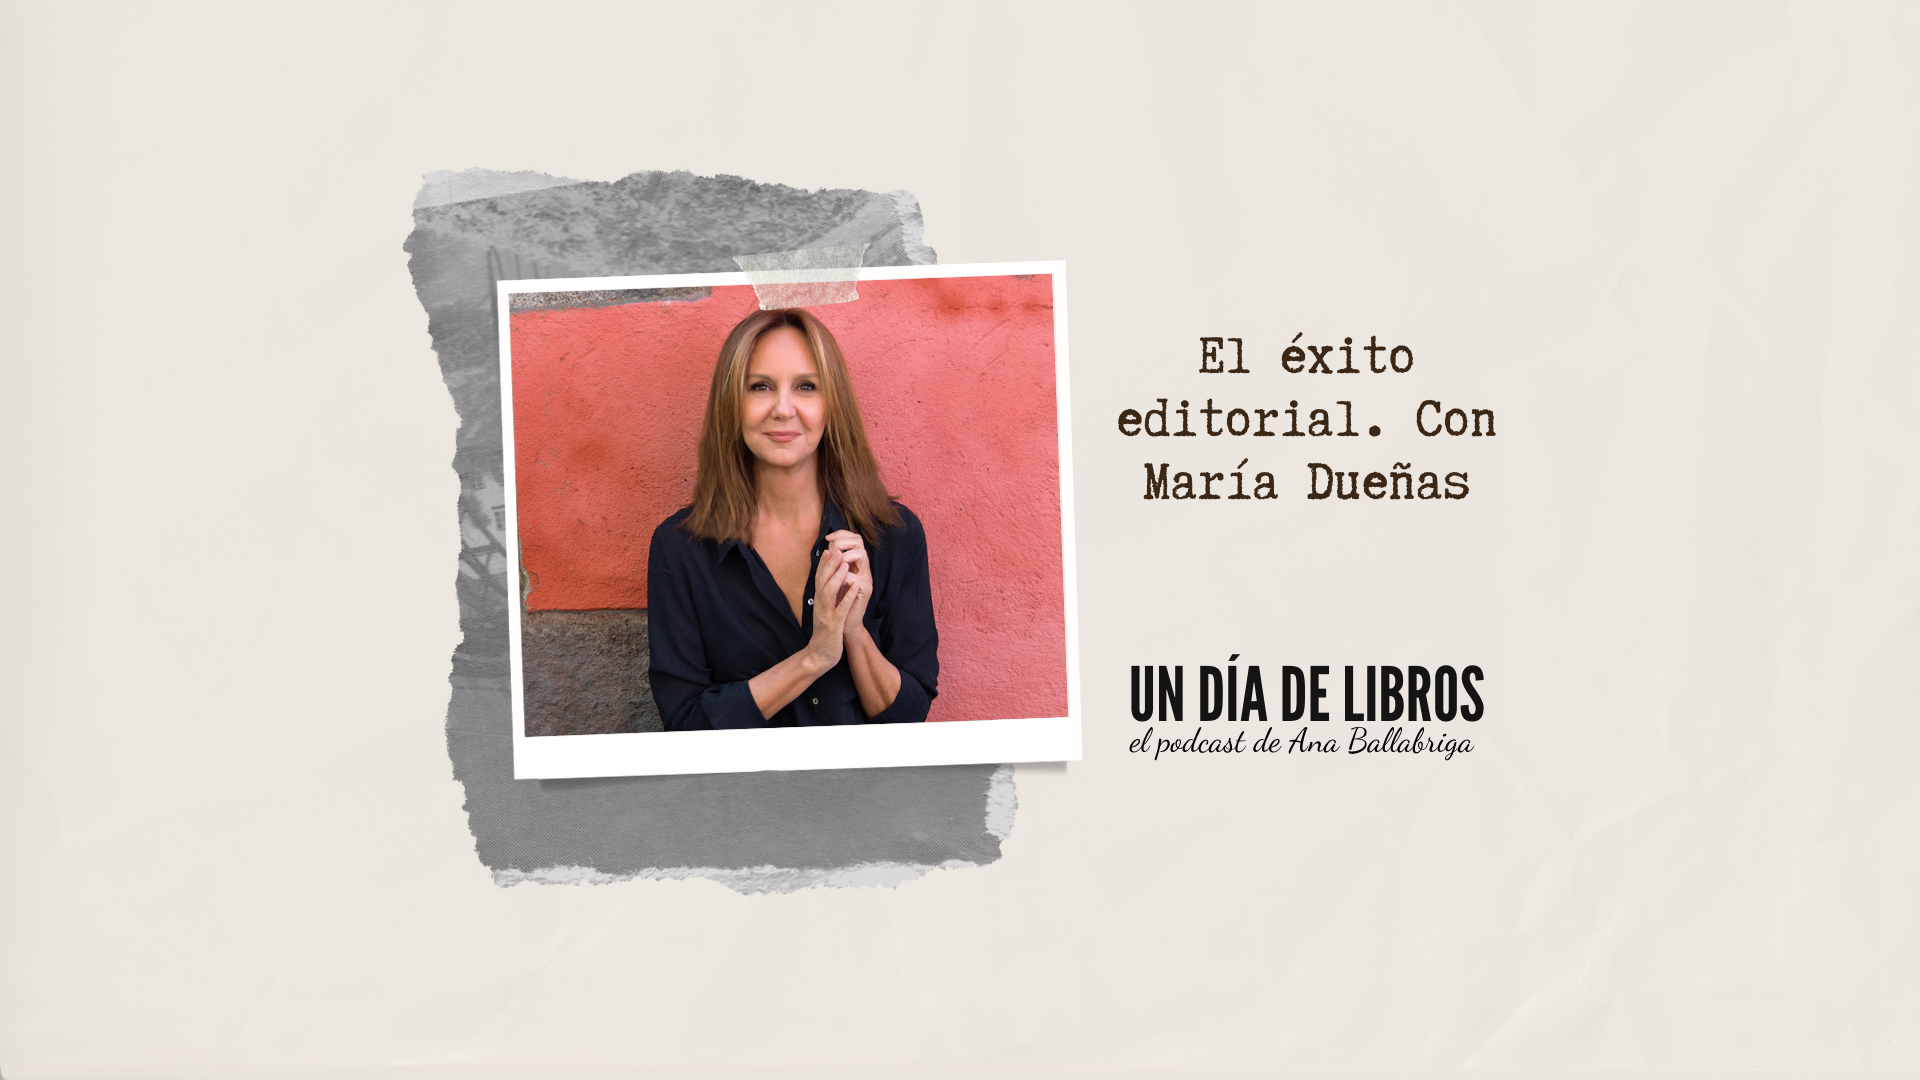 El éxito editorial, con María Dueñas